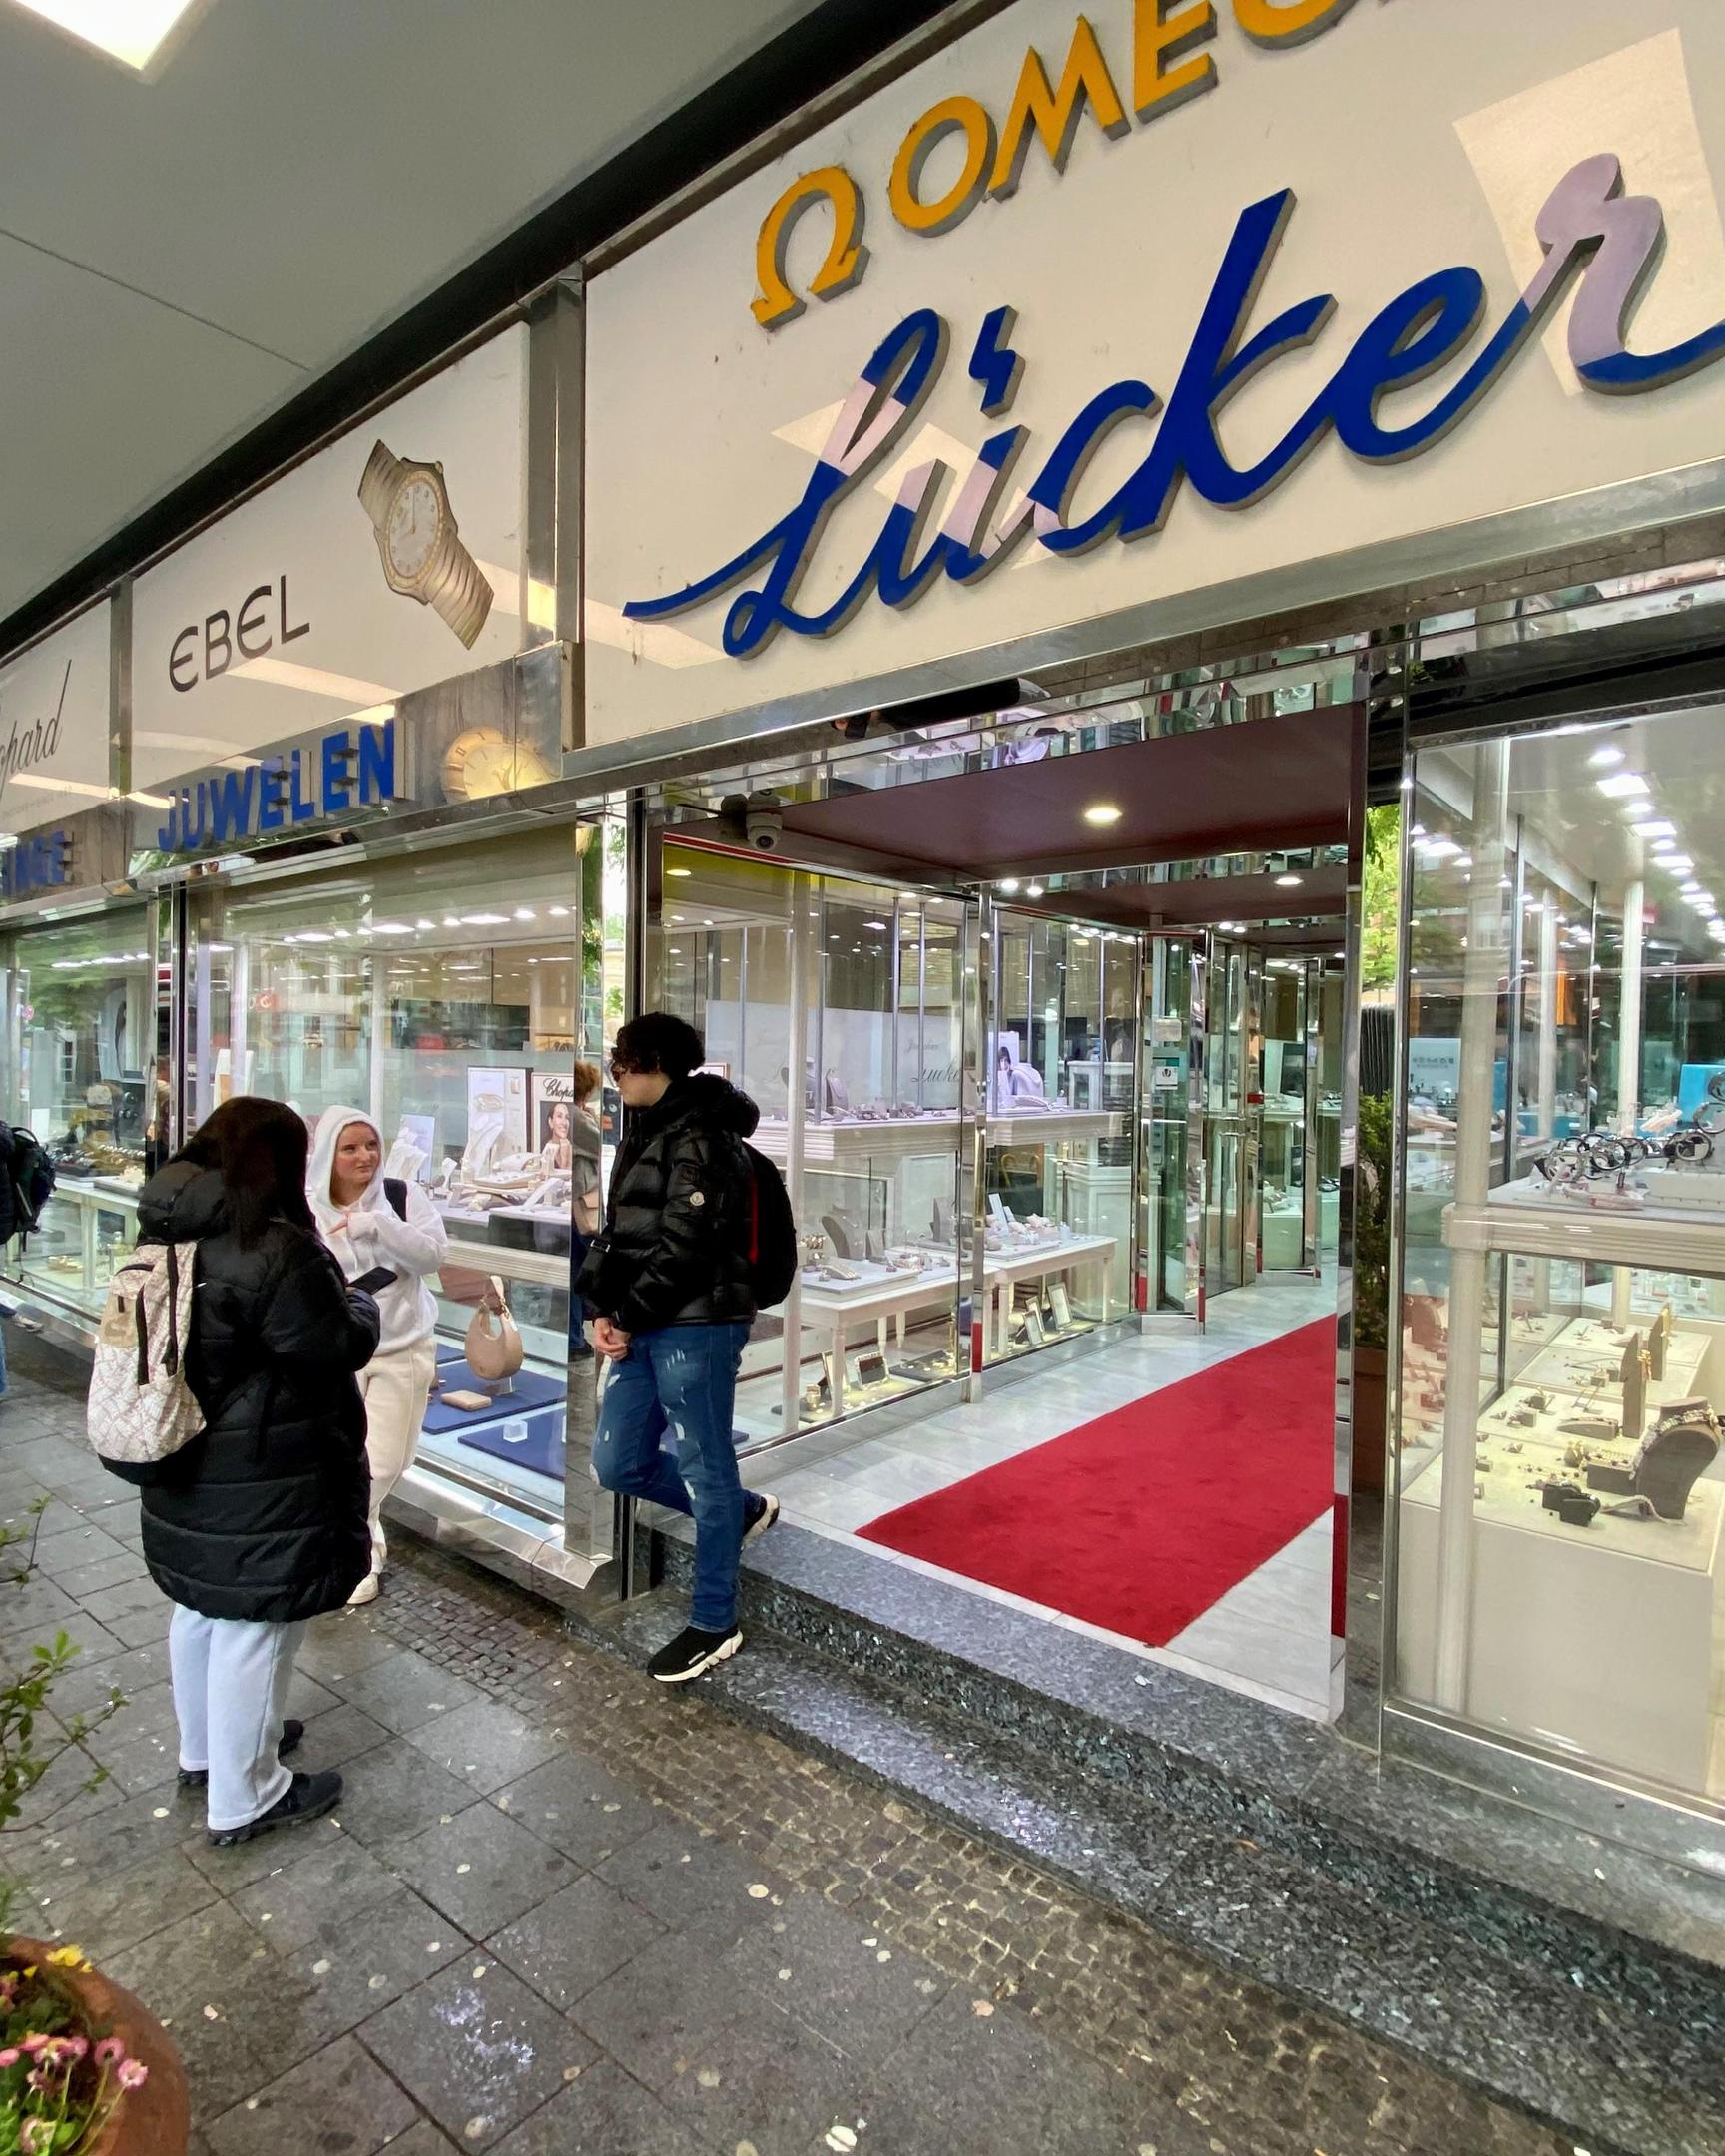 Prominente Adresse: Seit vielen Jahrzehnten ist Juwelier Lücker am Elisenbrunnen in Aachen beheimatet.